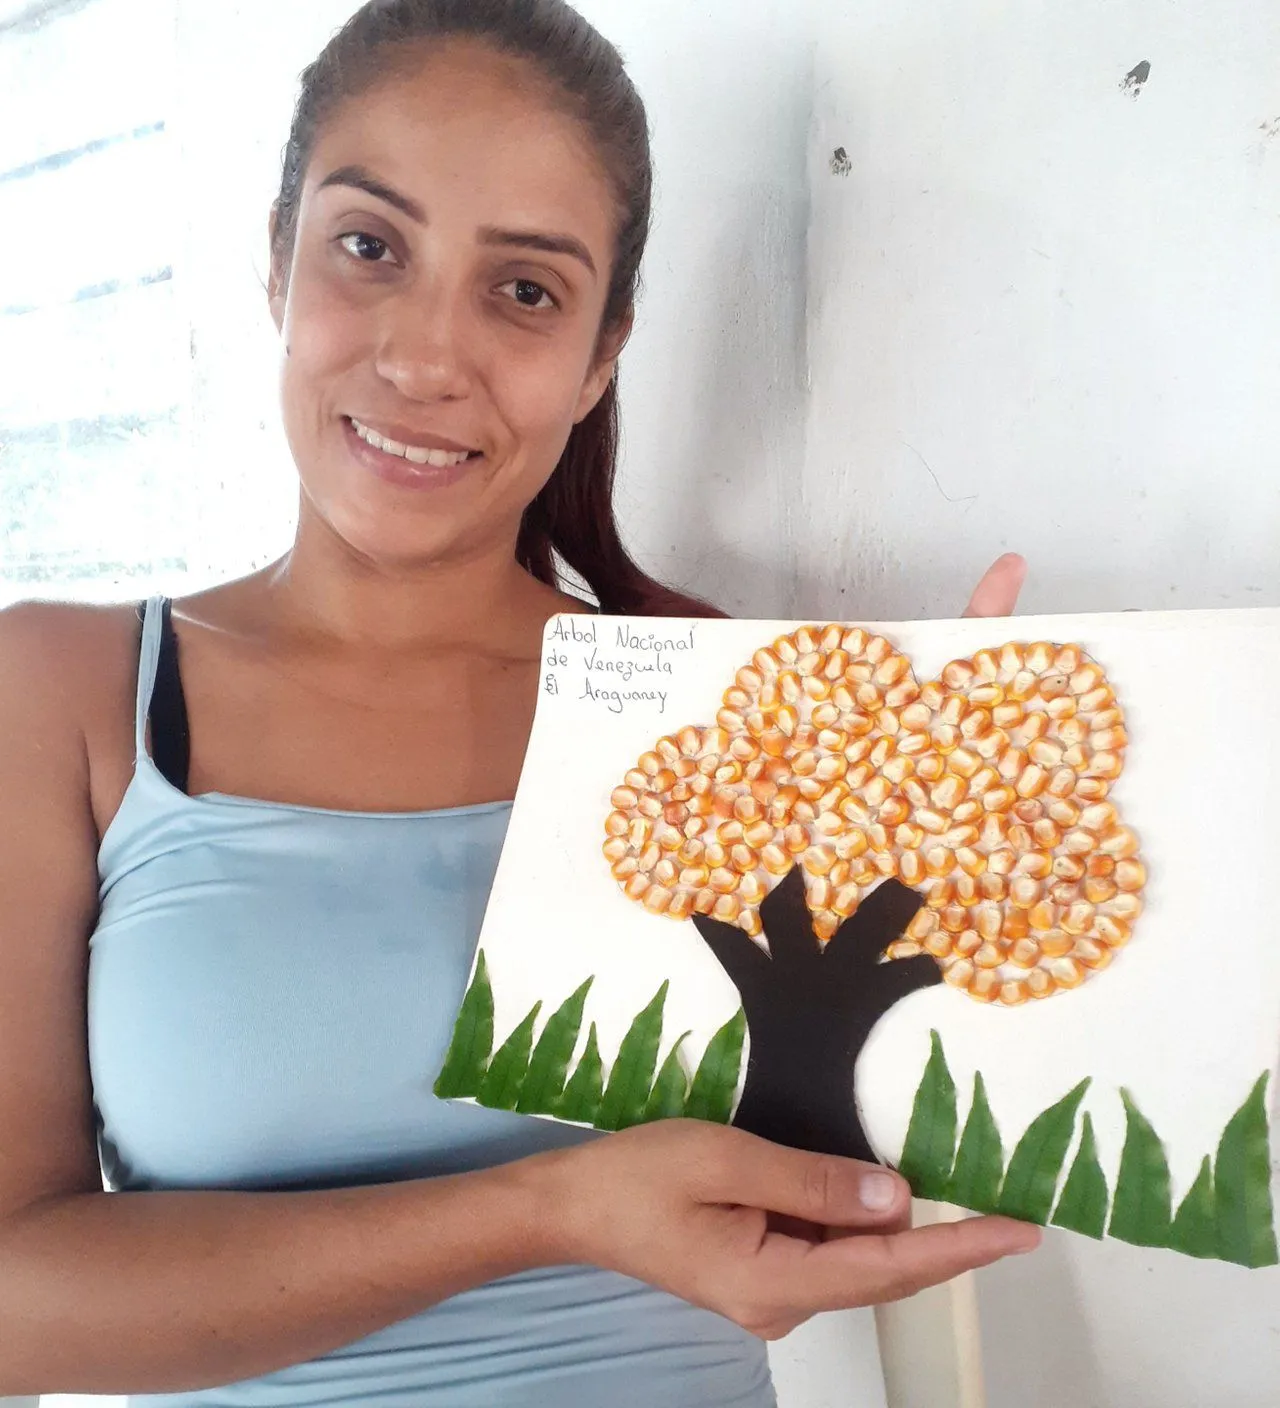 Mi lindo araguaney árbol nacional de venezuela, realizado con material  reciclado en 3D. / My cute araguaney national tree of venezuela, made with  recycled material in 3D. | PeakD